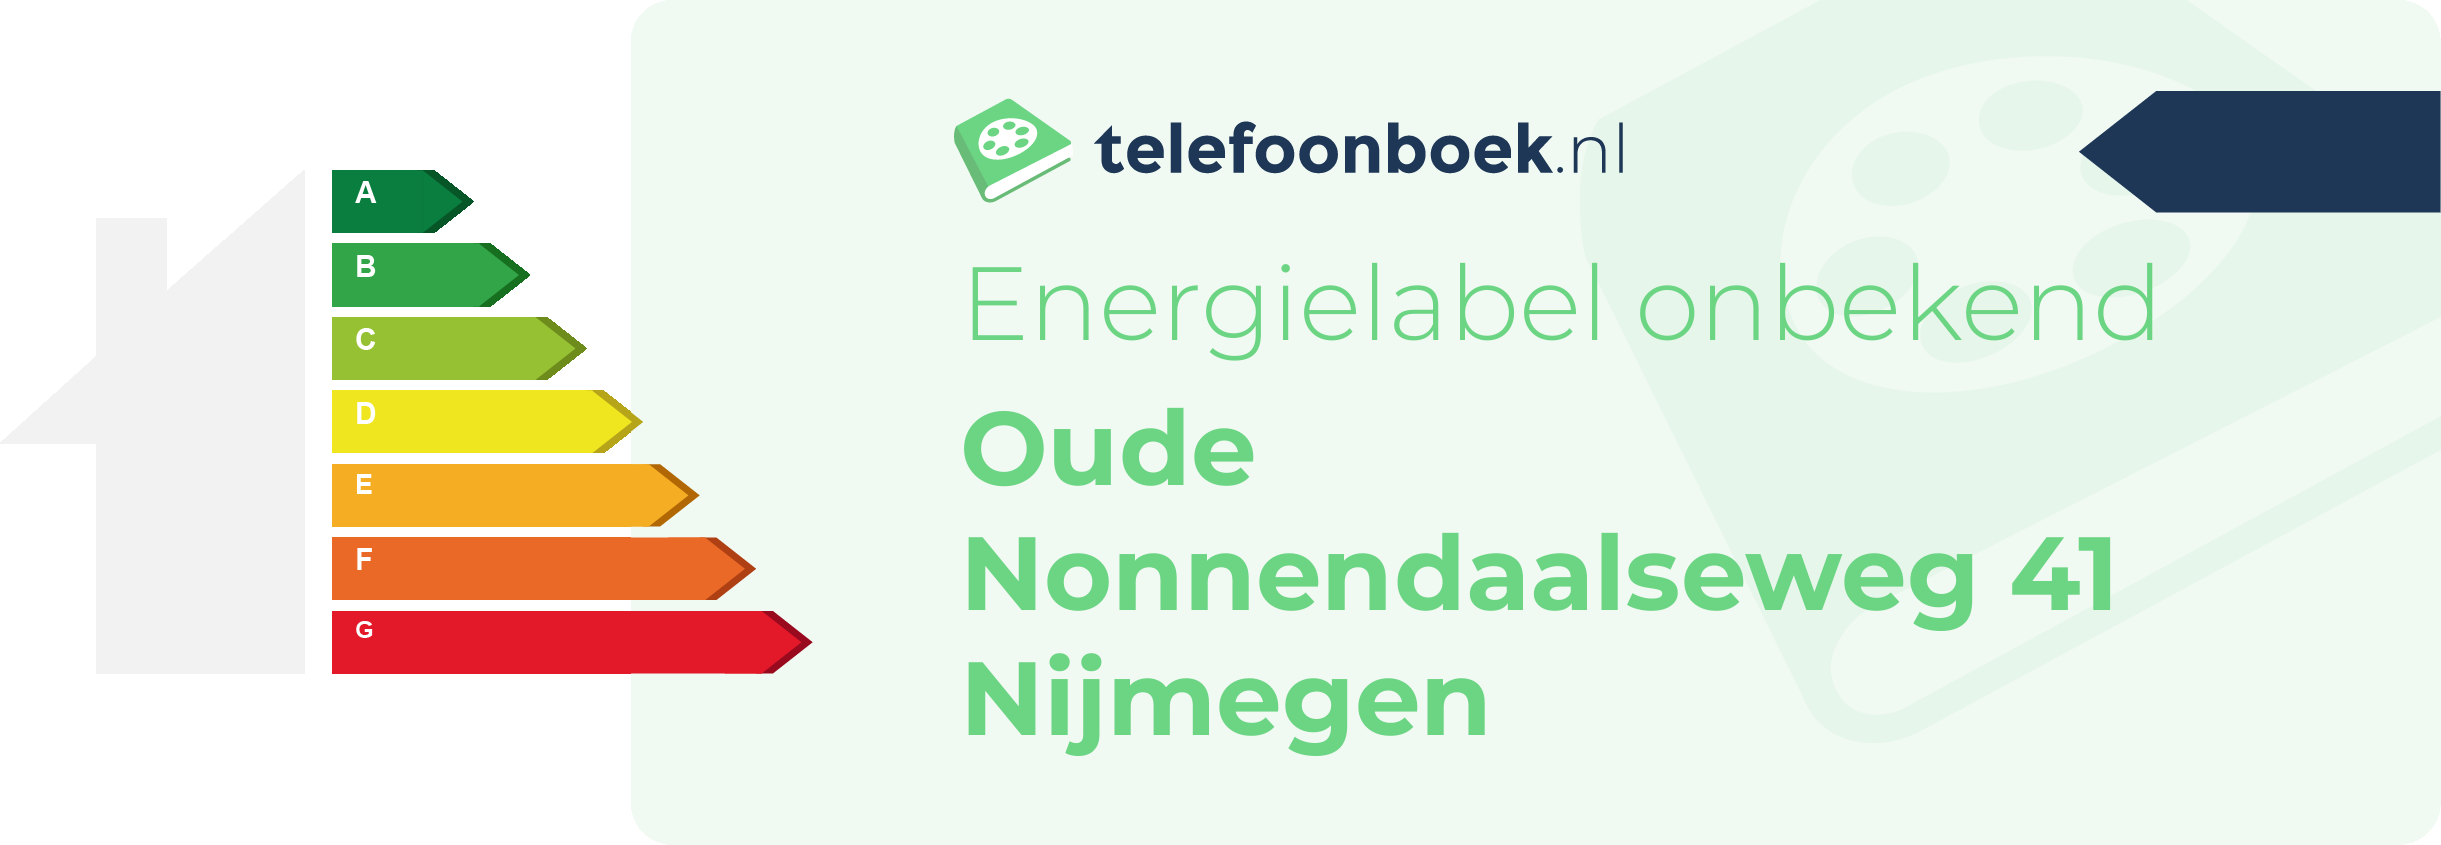 Energielabel Oude Nonnendaalseweg 41 Nijmegen